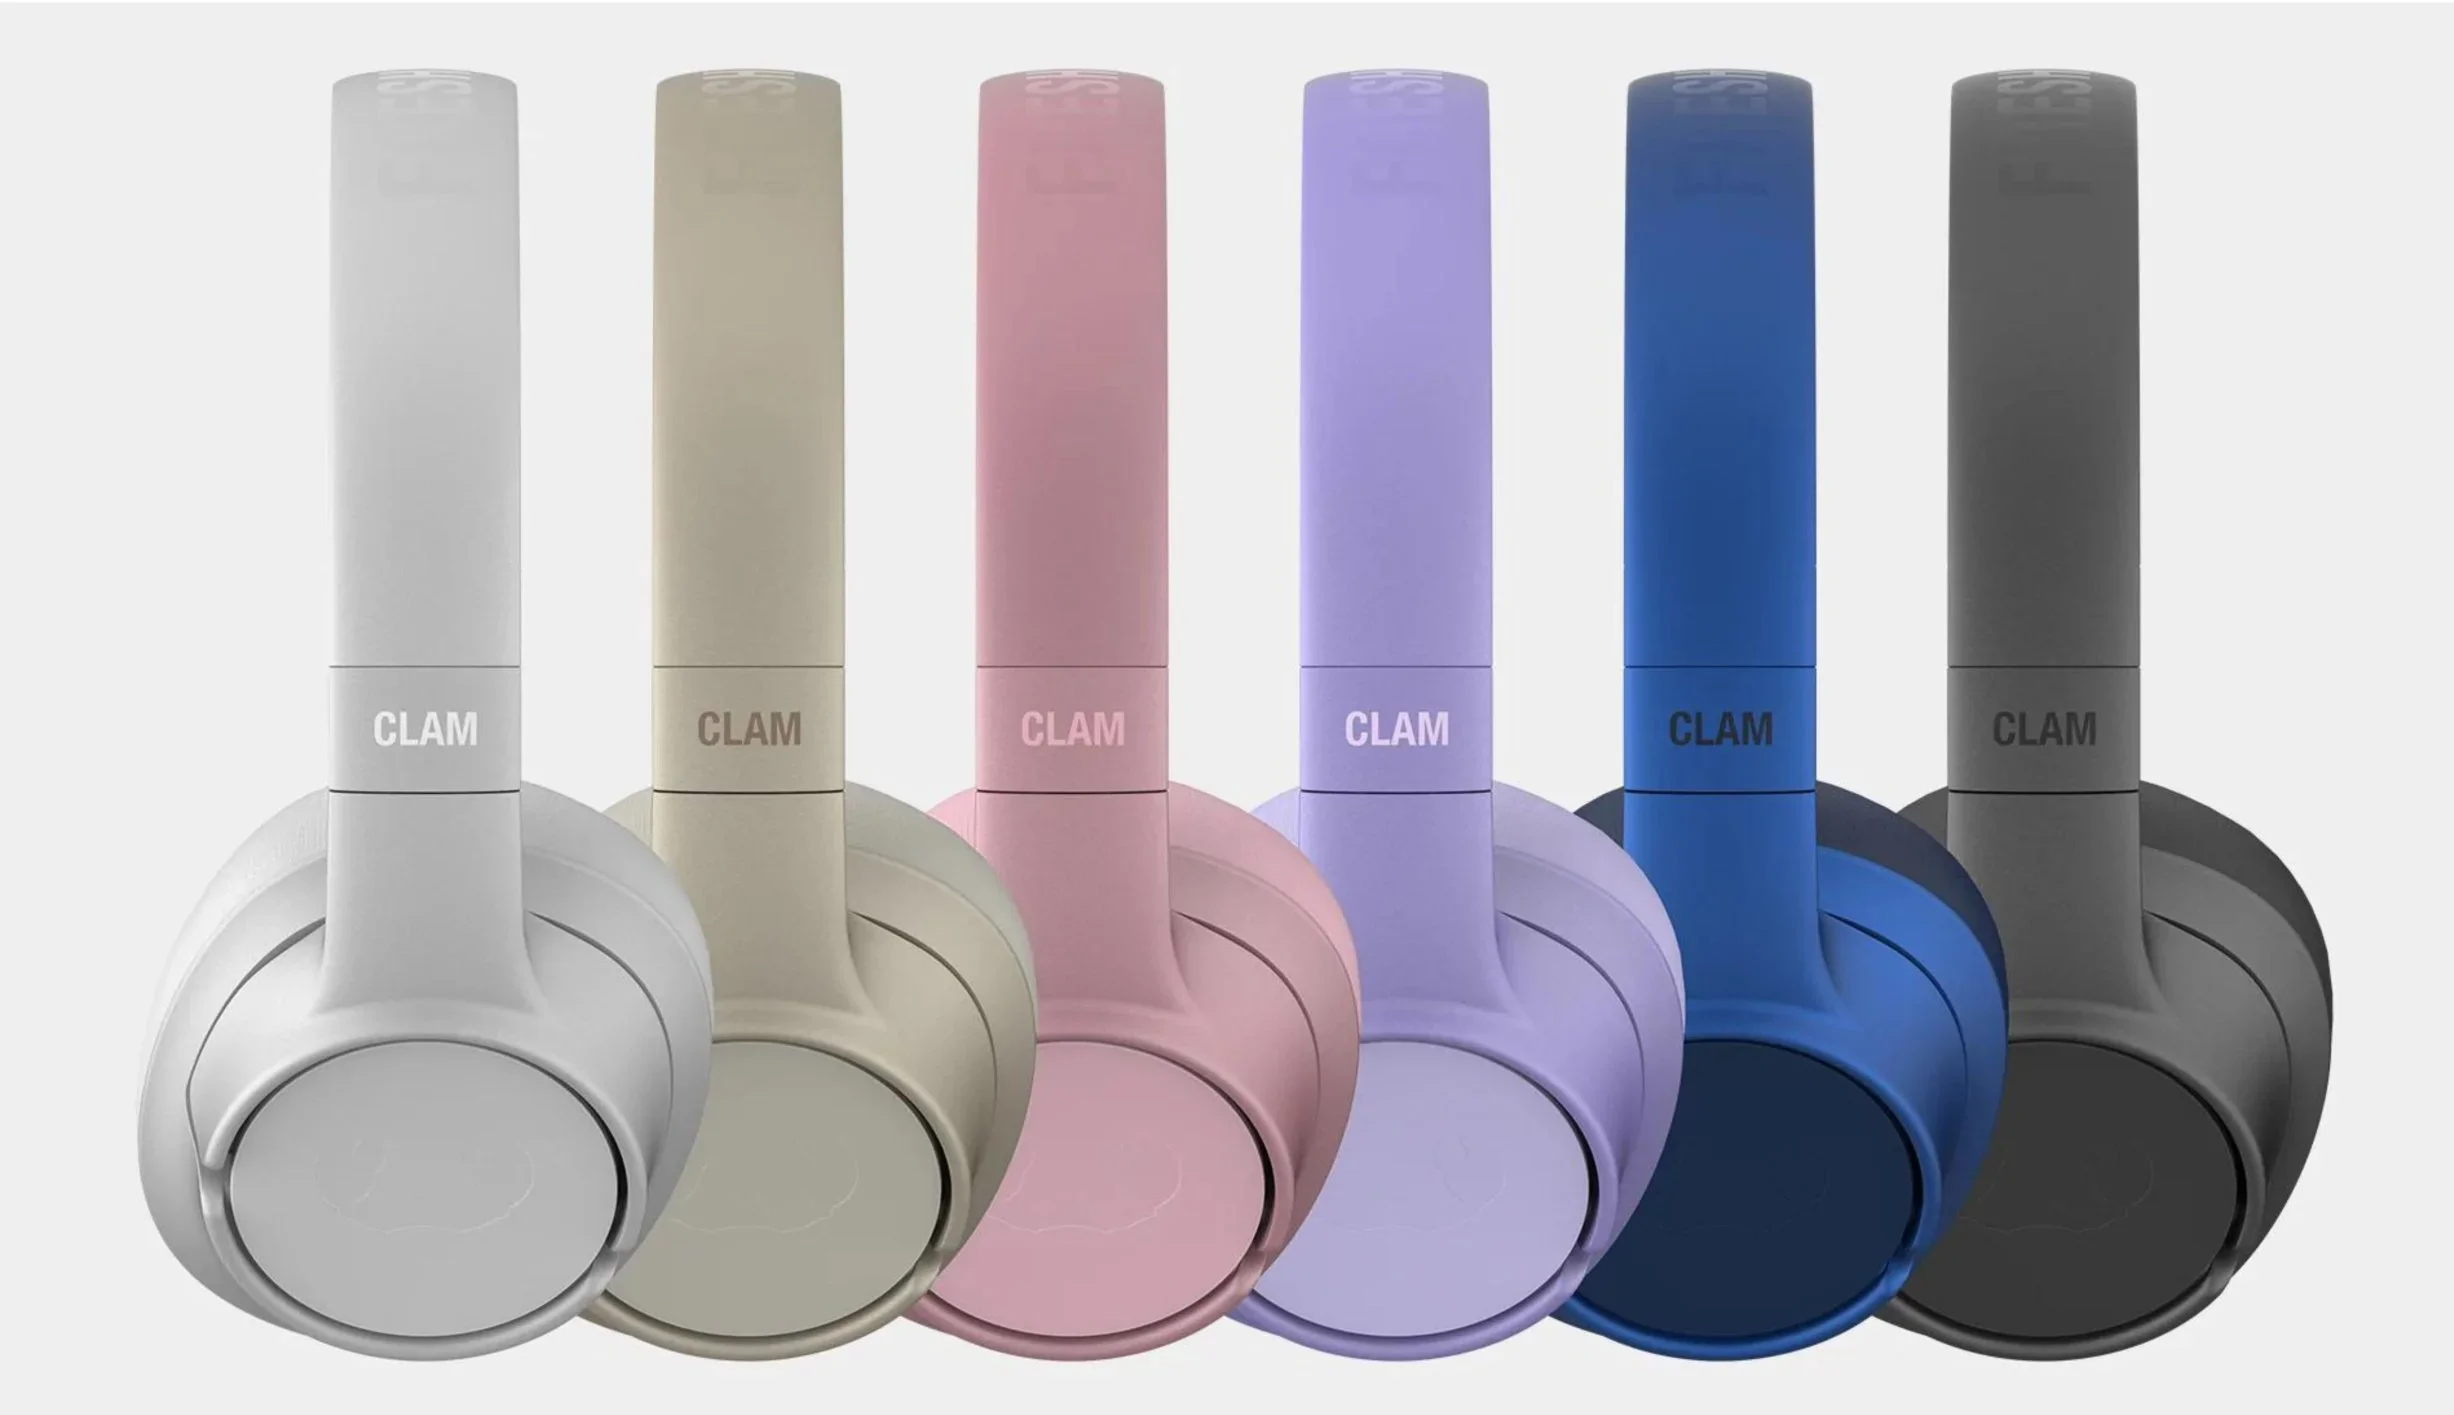 Słuchawki mobilne Fresh ’n Rebel Clam Core zaoferują dziesiątki godzin słuchania